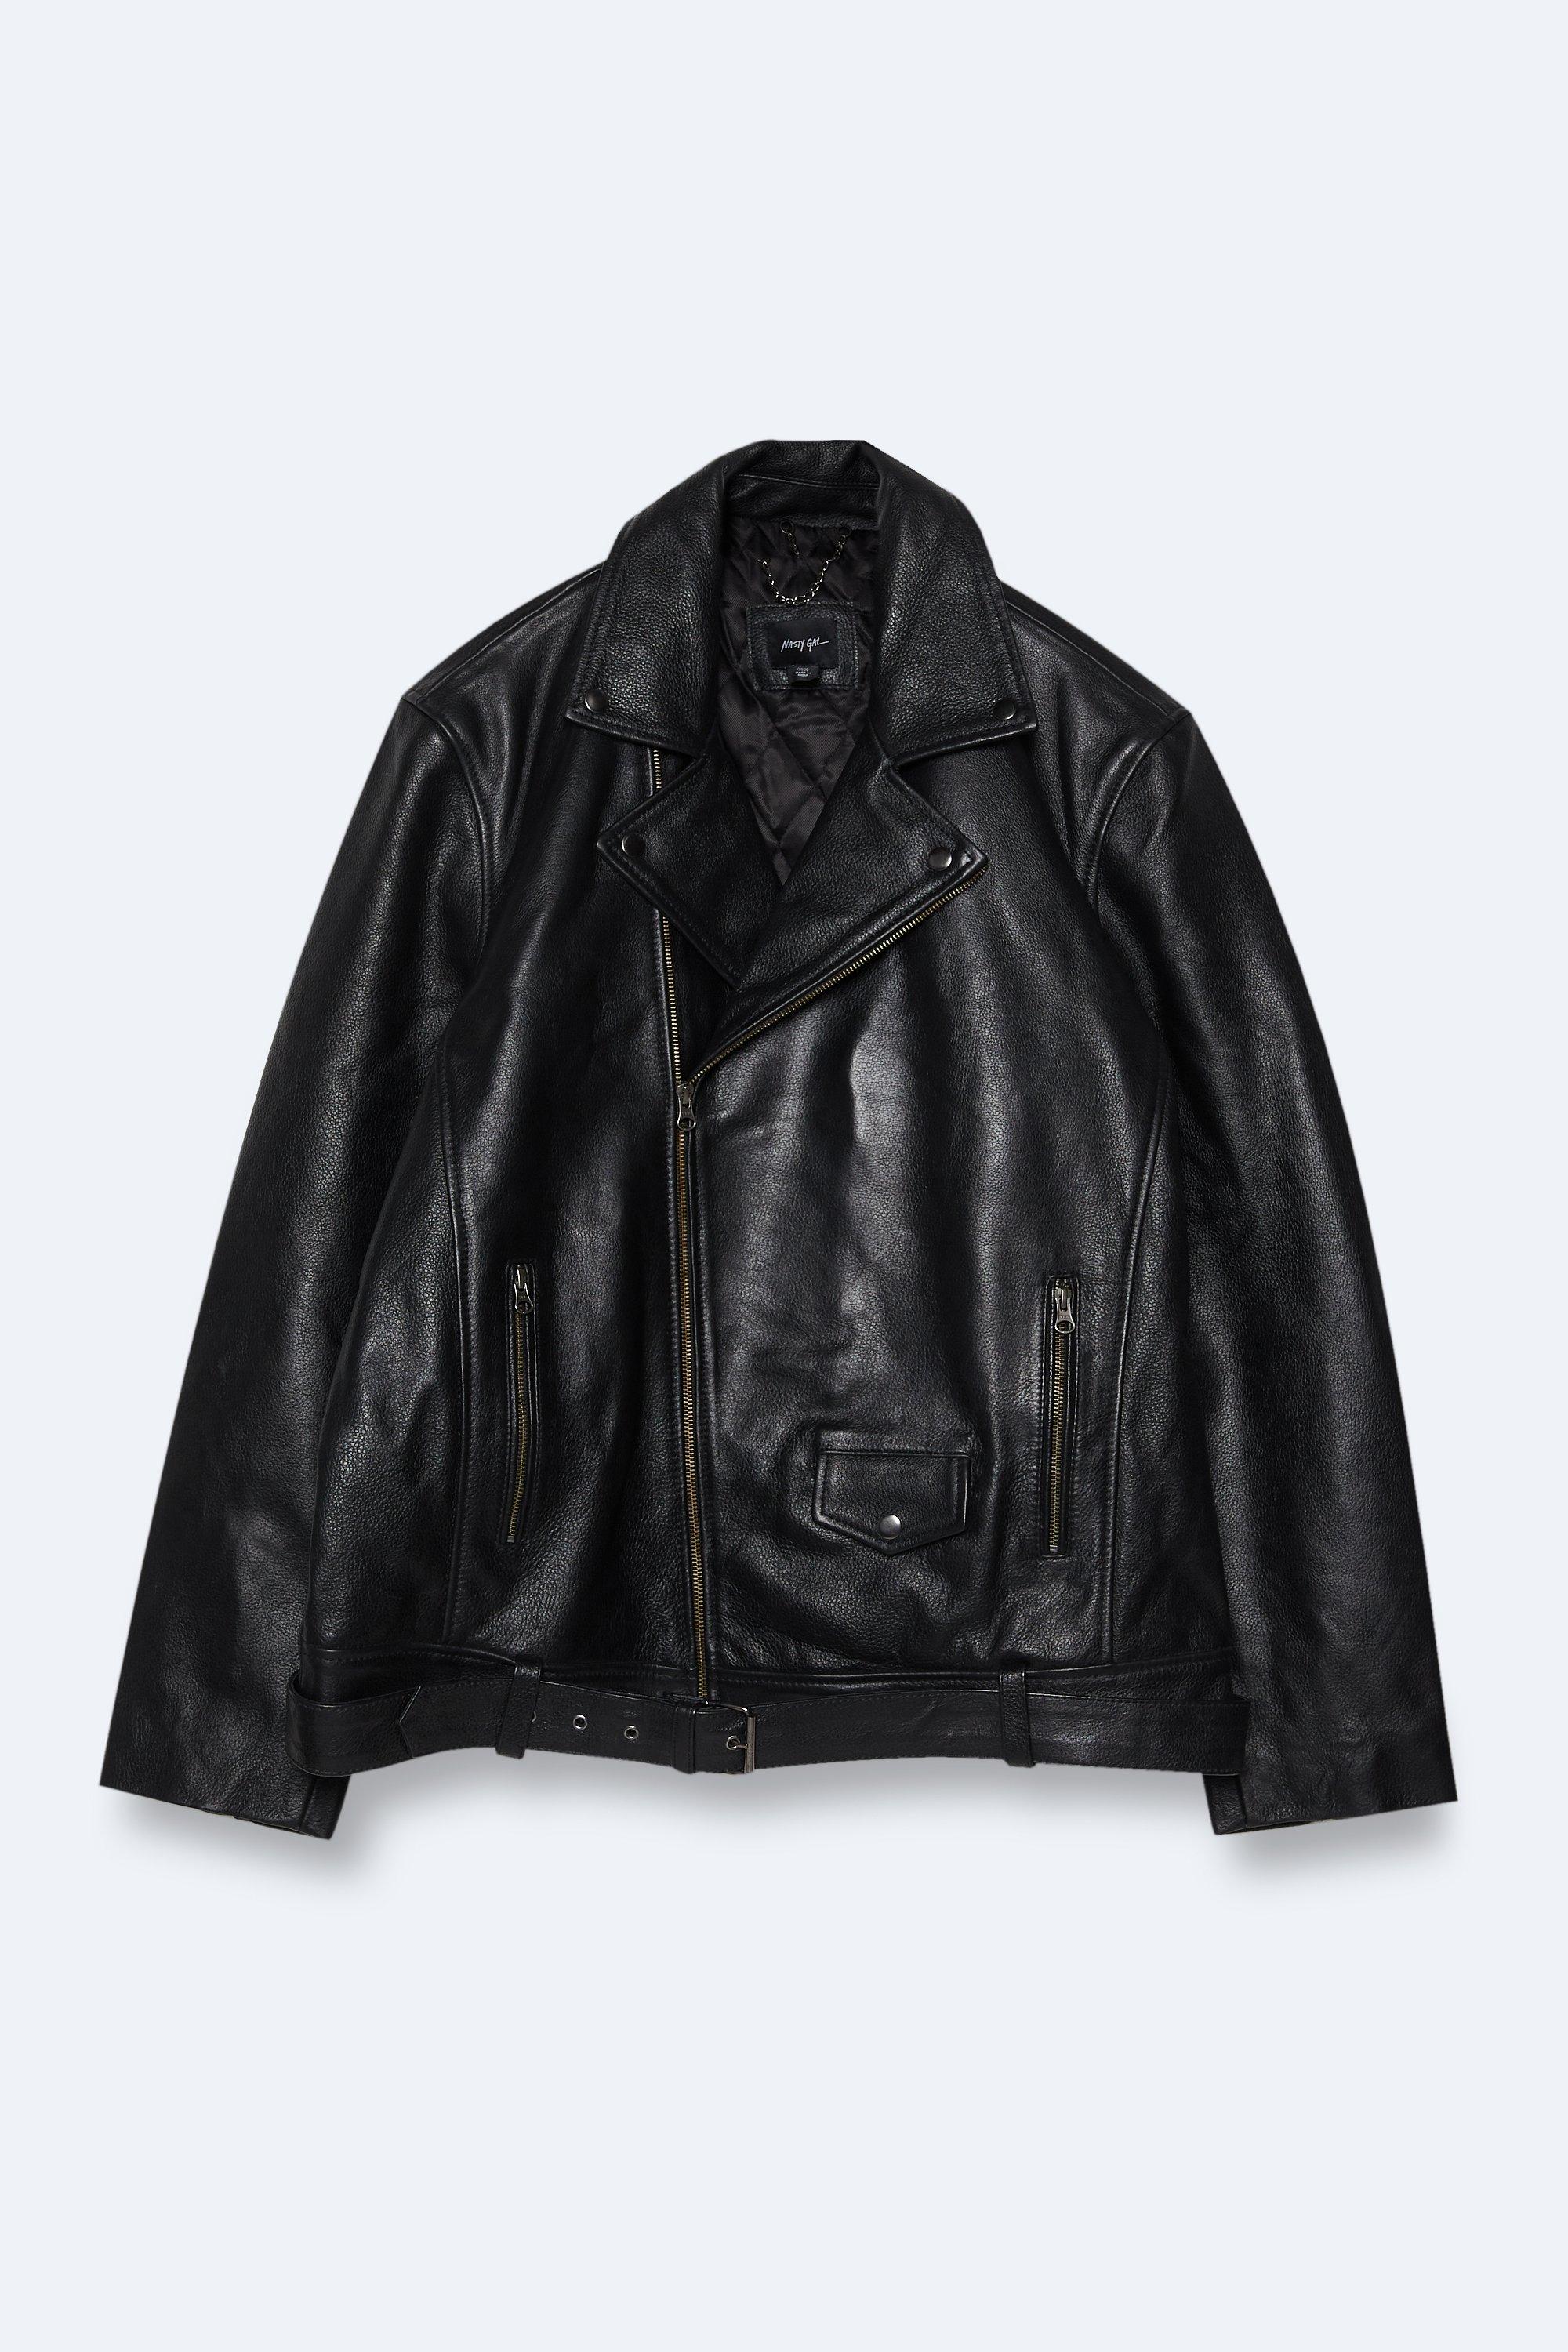 Байкерская куртка-бойфренд из натуральной кожи больших размеров Nasty Gal, черный байкерская куртка больших размеров из искусственной кожи с бахромой на спине nasty gal черный